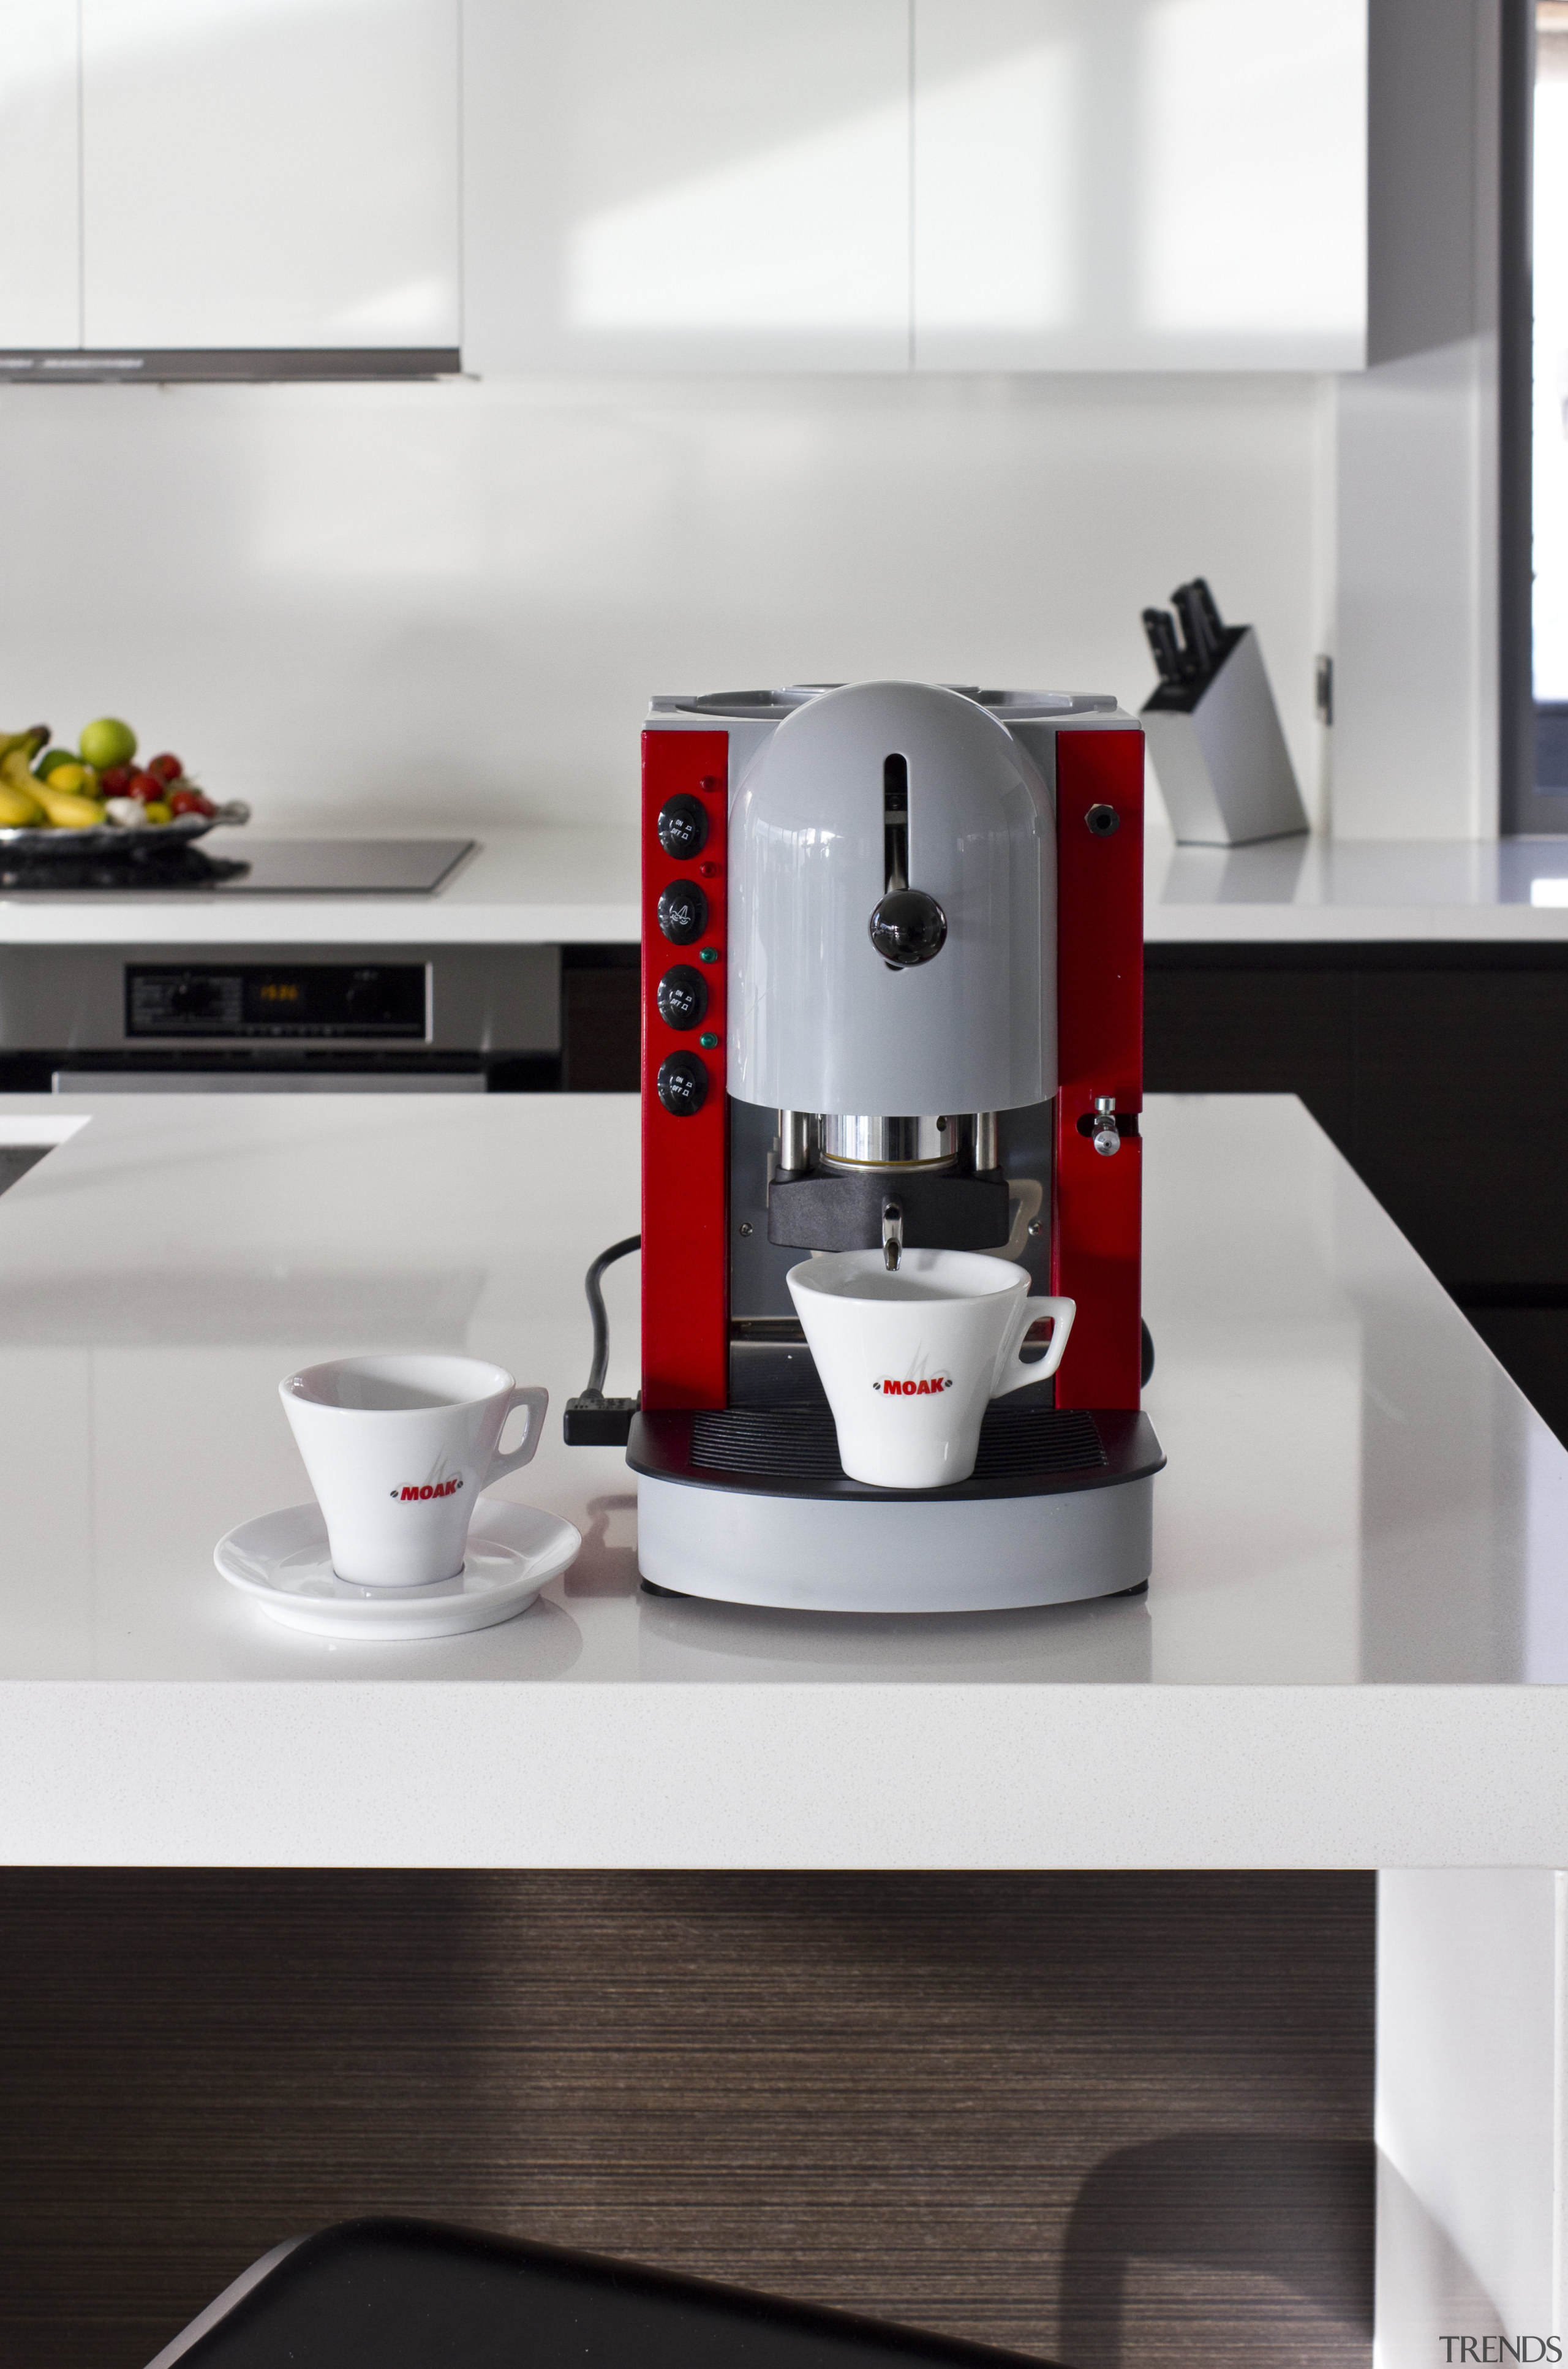 Nero Italia Spinel Lolita Coffee Maker - Nero coffeemaker, espresso machine, home appliance, kettle, kitchen appliance, mixer, product, product design, small appliance, white